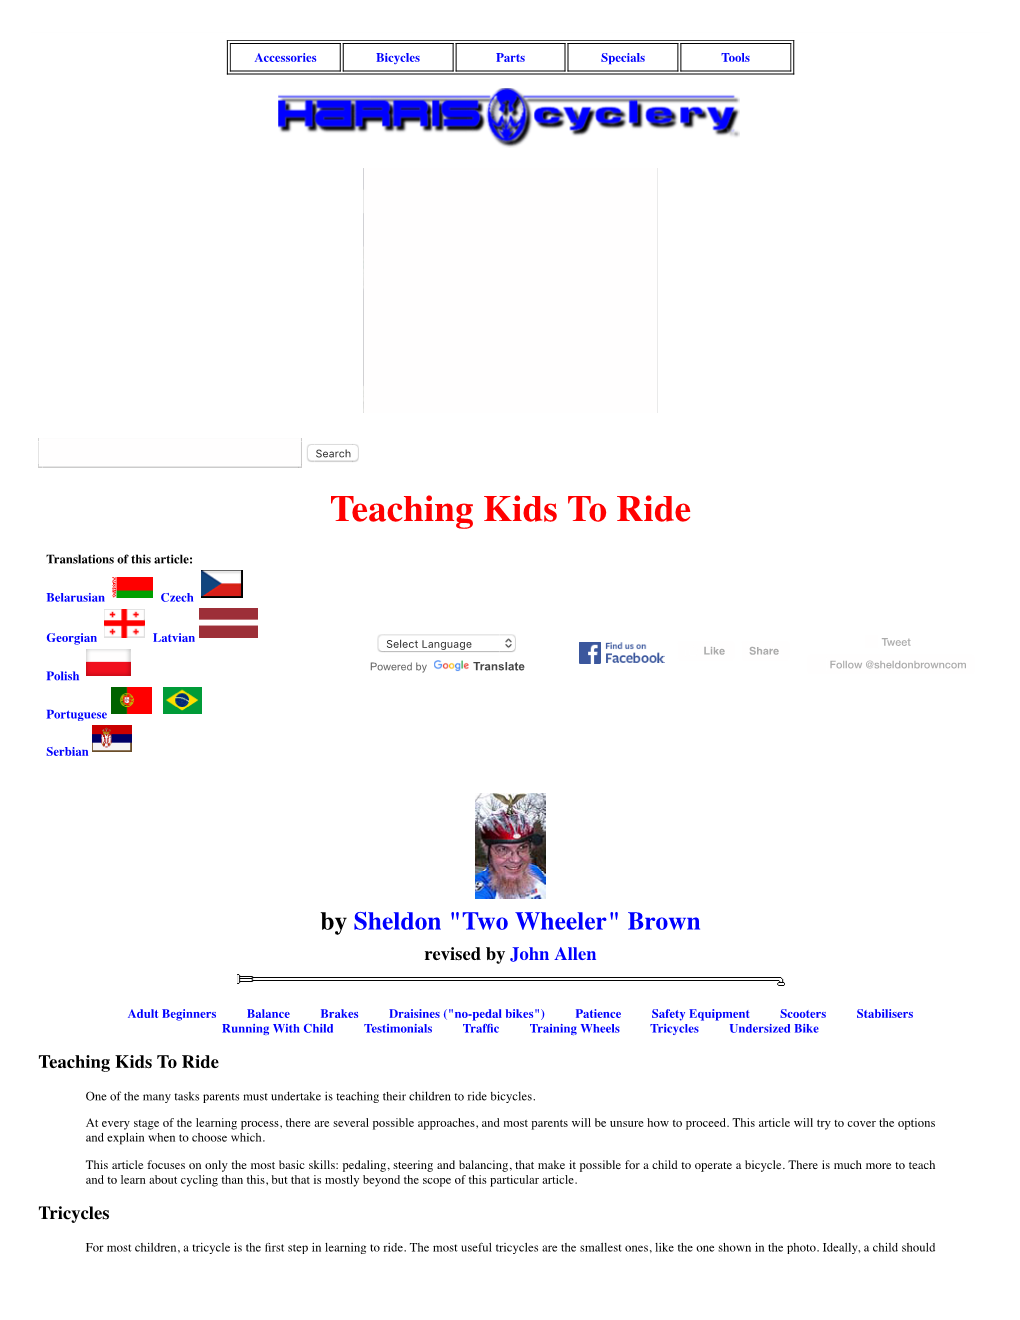 Teaching Kids to Ride